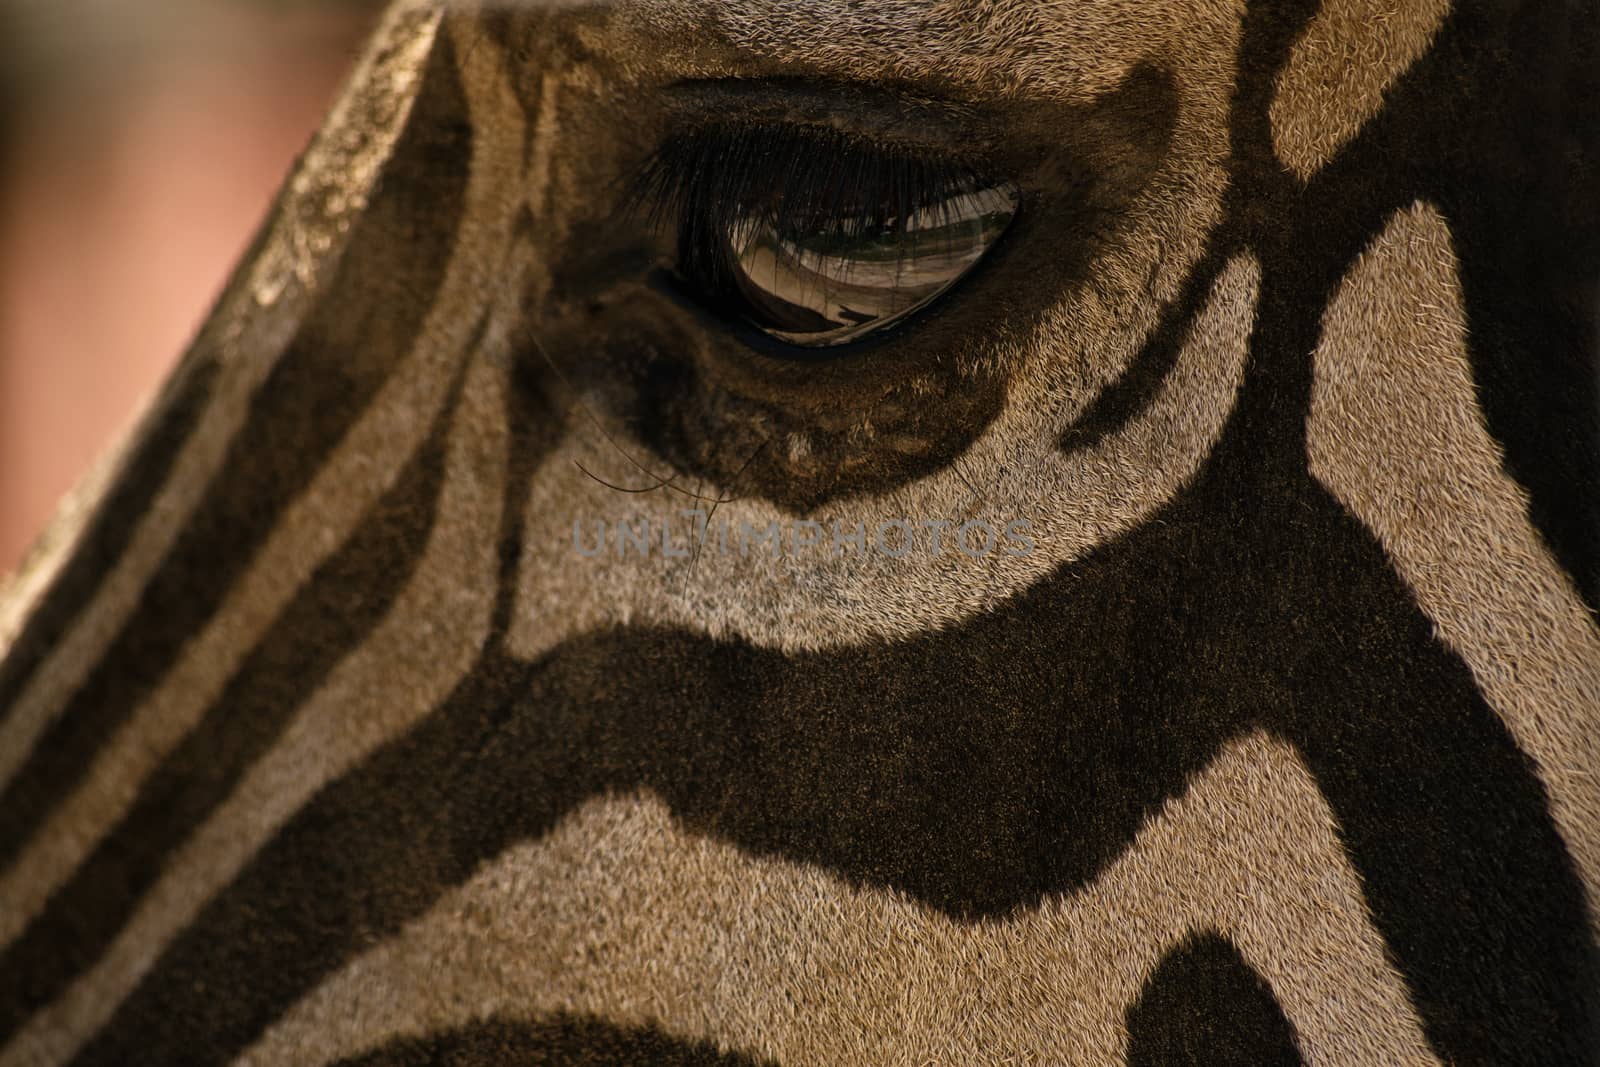 Close up shot of an eye of a zebra.